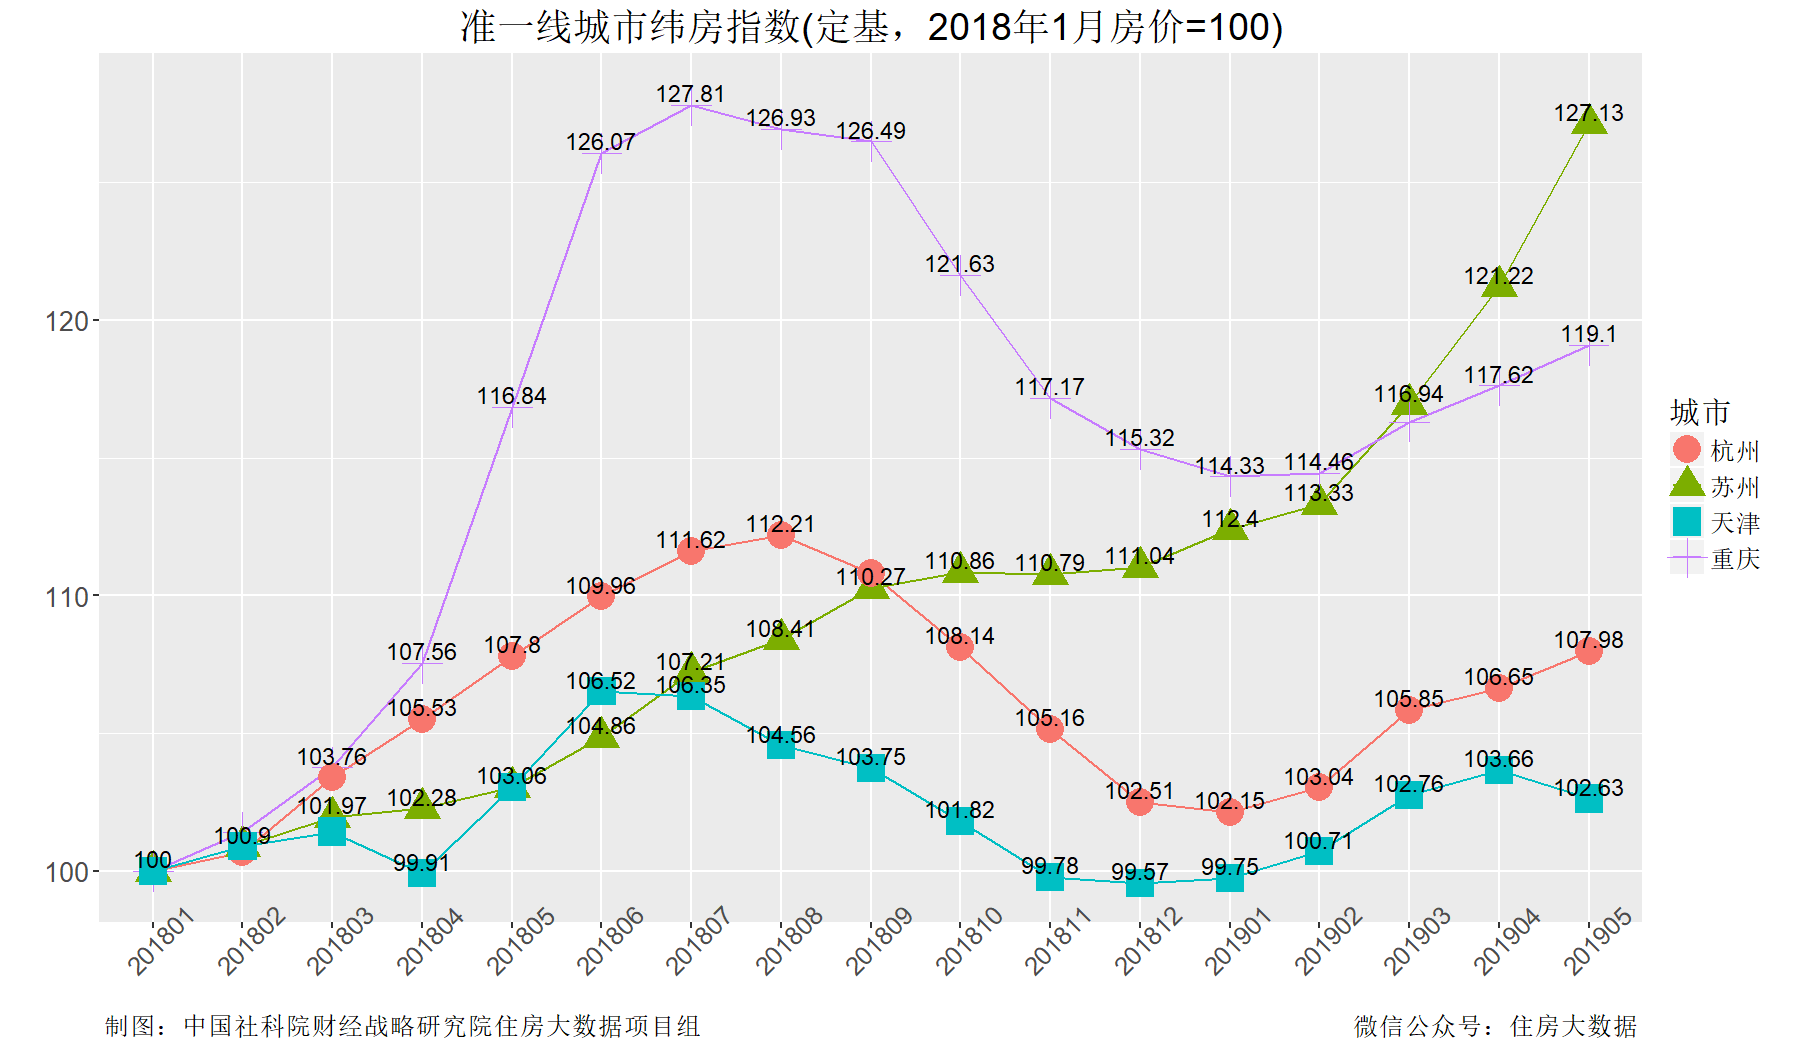 郑州人口为什么上升快_郑州 真中 常住人口规模居全国第十 十年间人口增量居